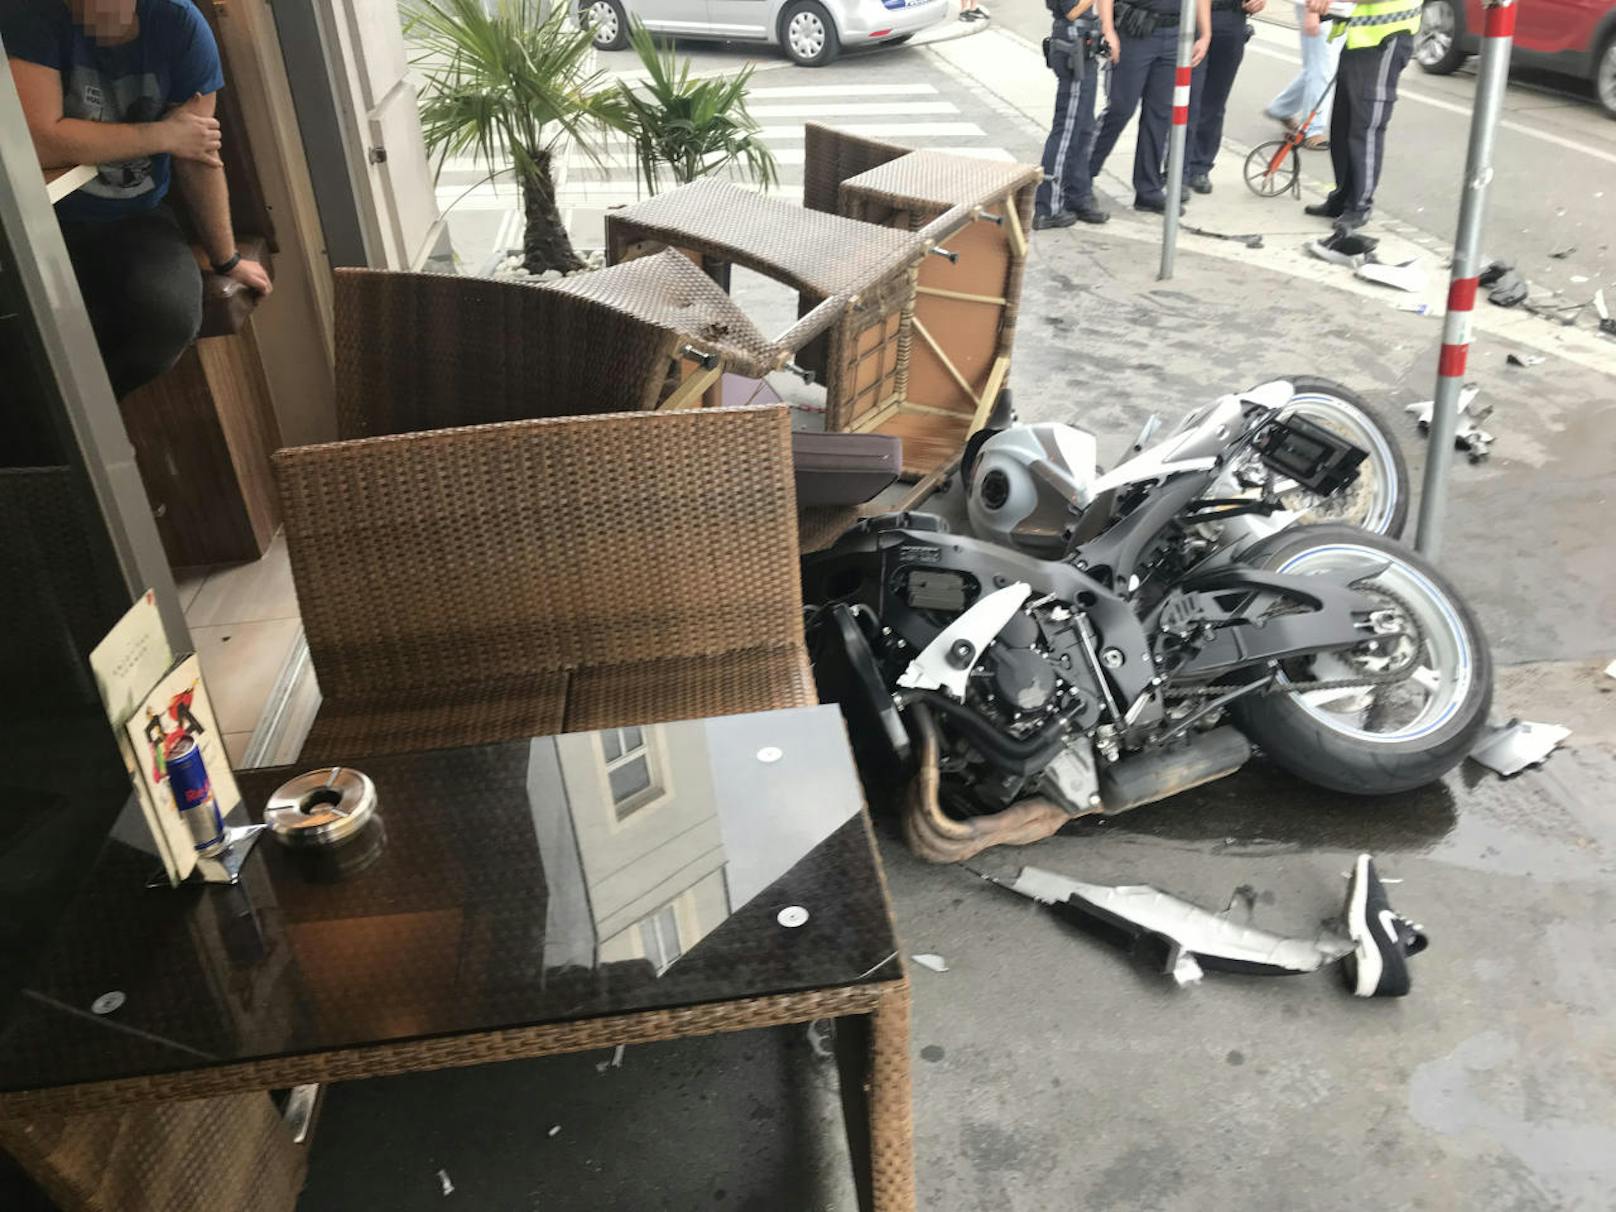 Am Dienstagnachmittag kam es zu einem schweren Verkehrsunfall auf der Ottakringer Straße. Ein junger Biker kämpft um sein Leben.